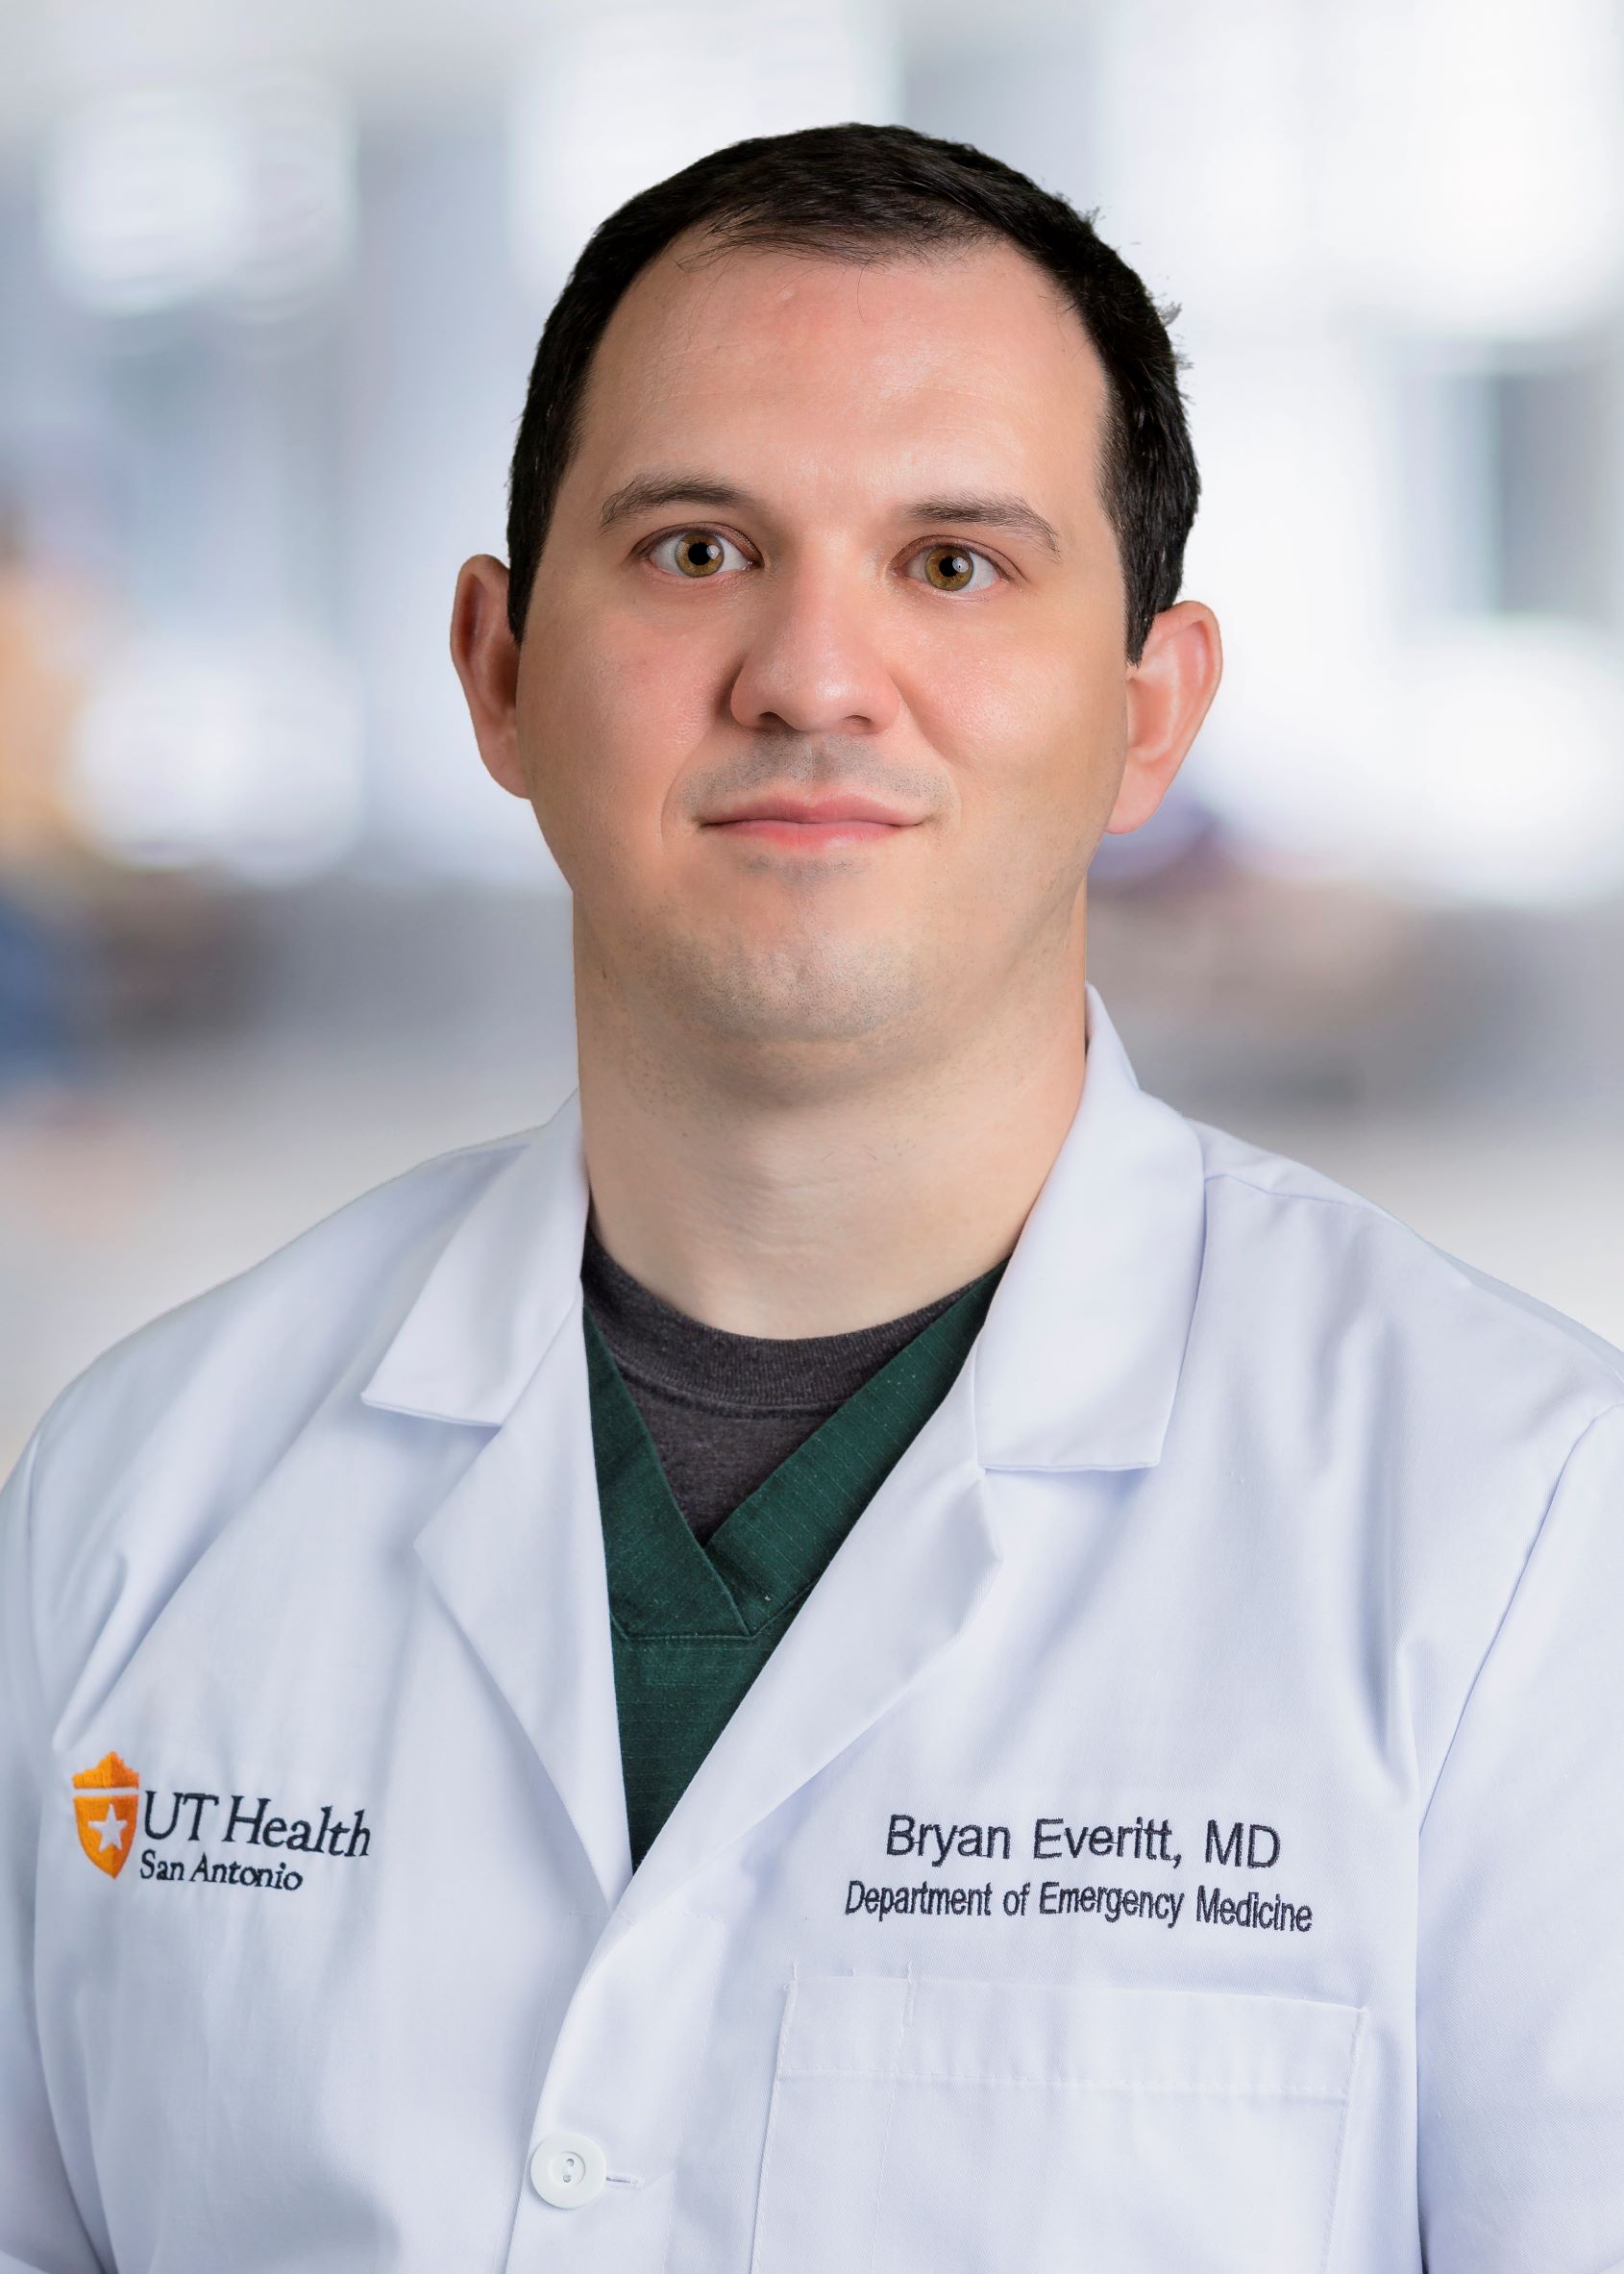 Dr. Bryan Everett